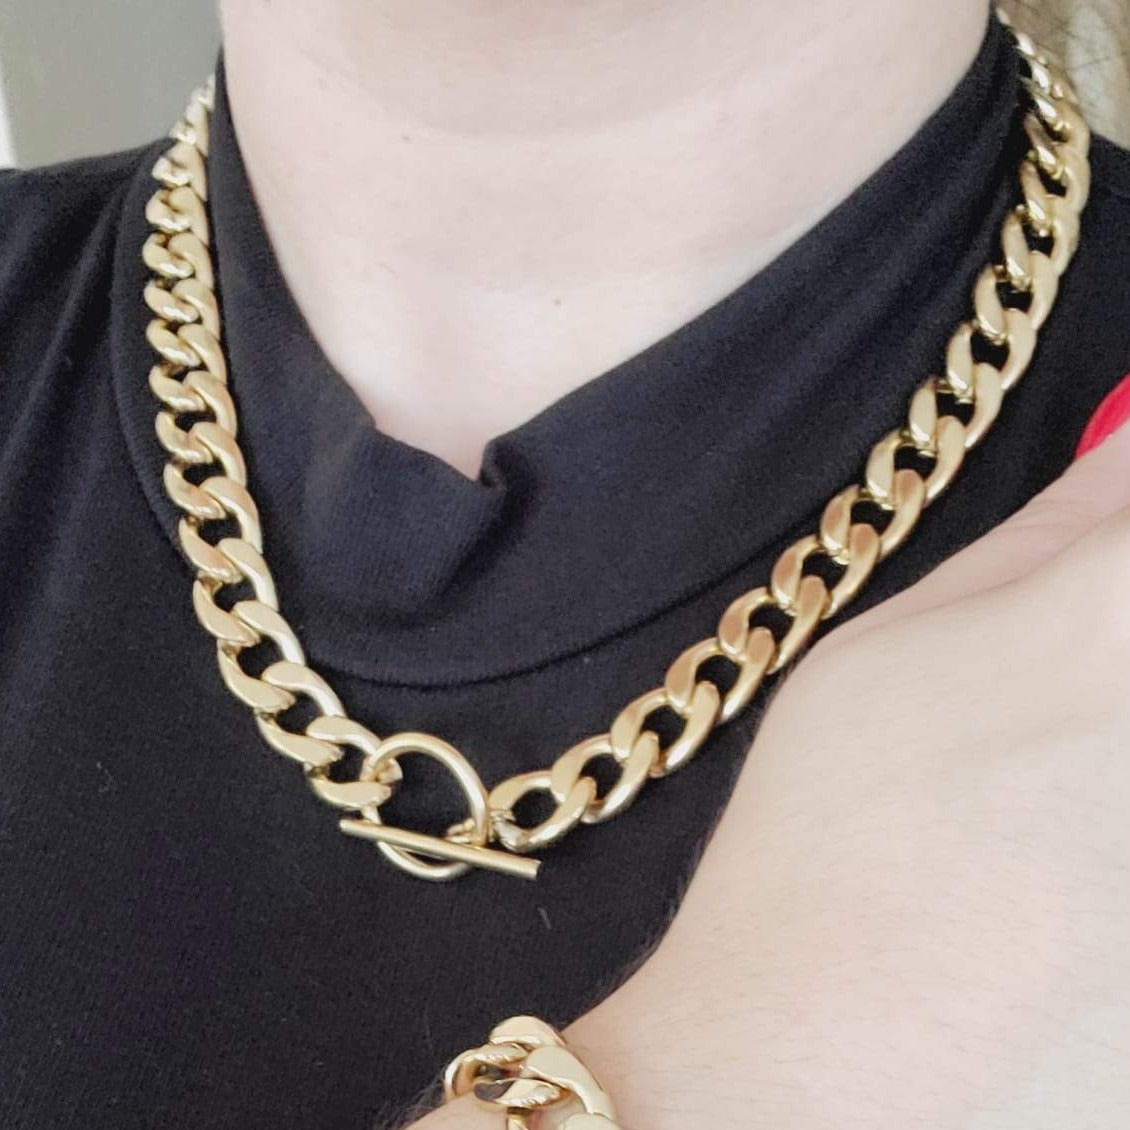 Farrah Chain Choker Necklace WARM BRASS/MIX